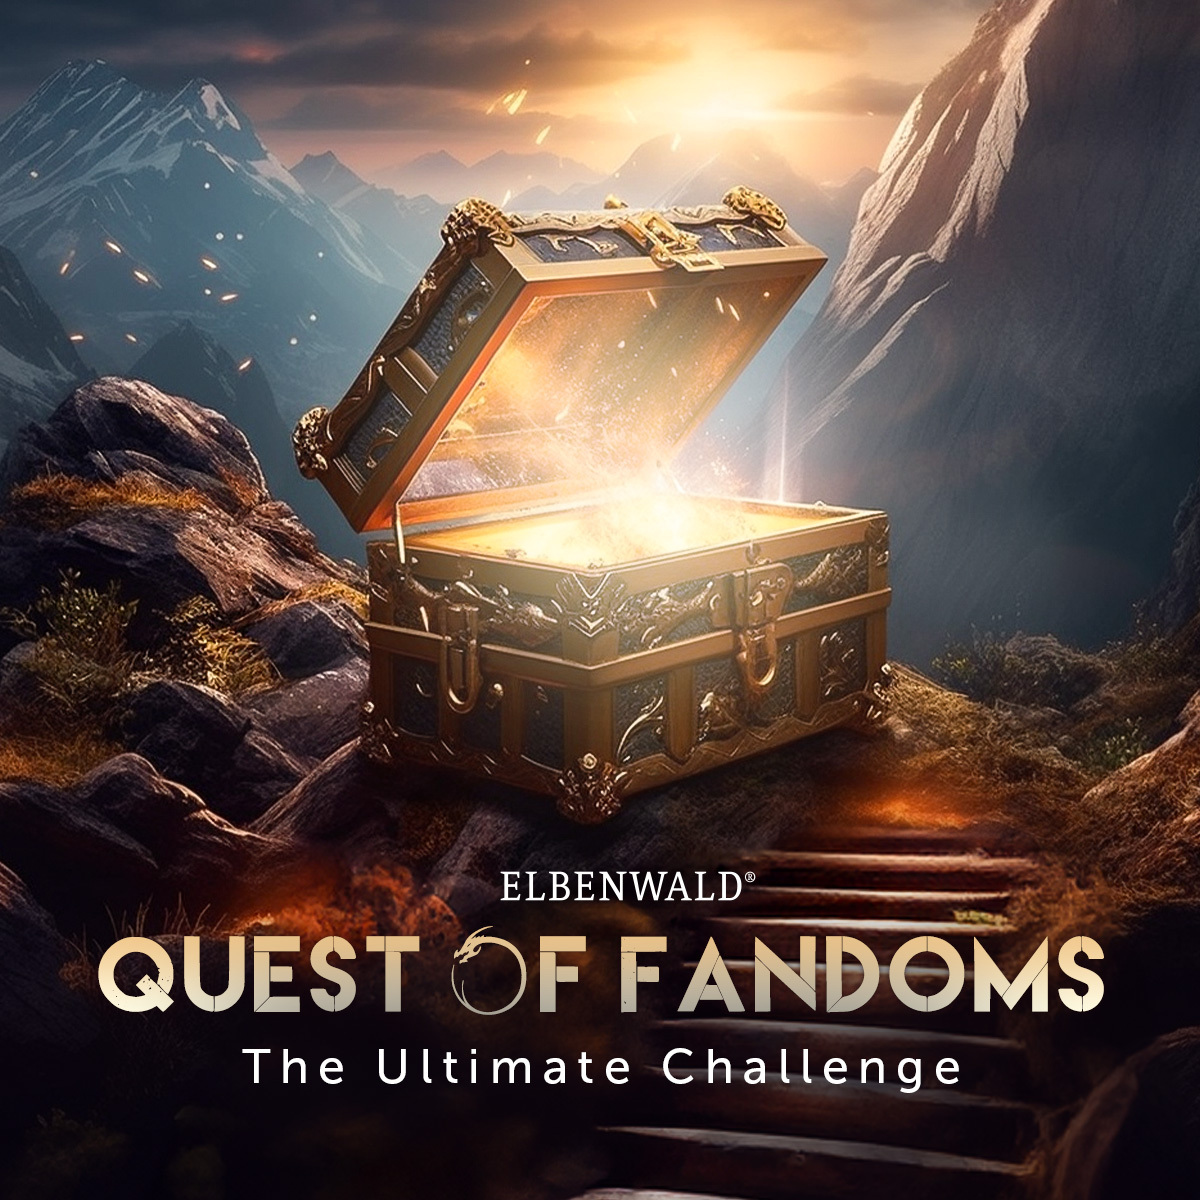 Elbenwald Quest of Fandoms - The Ultimate Challenge